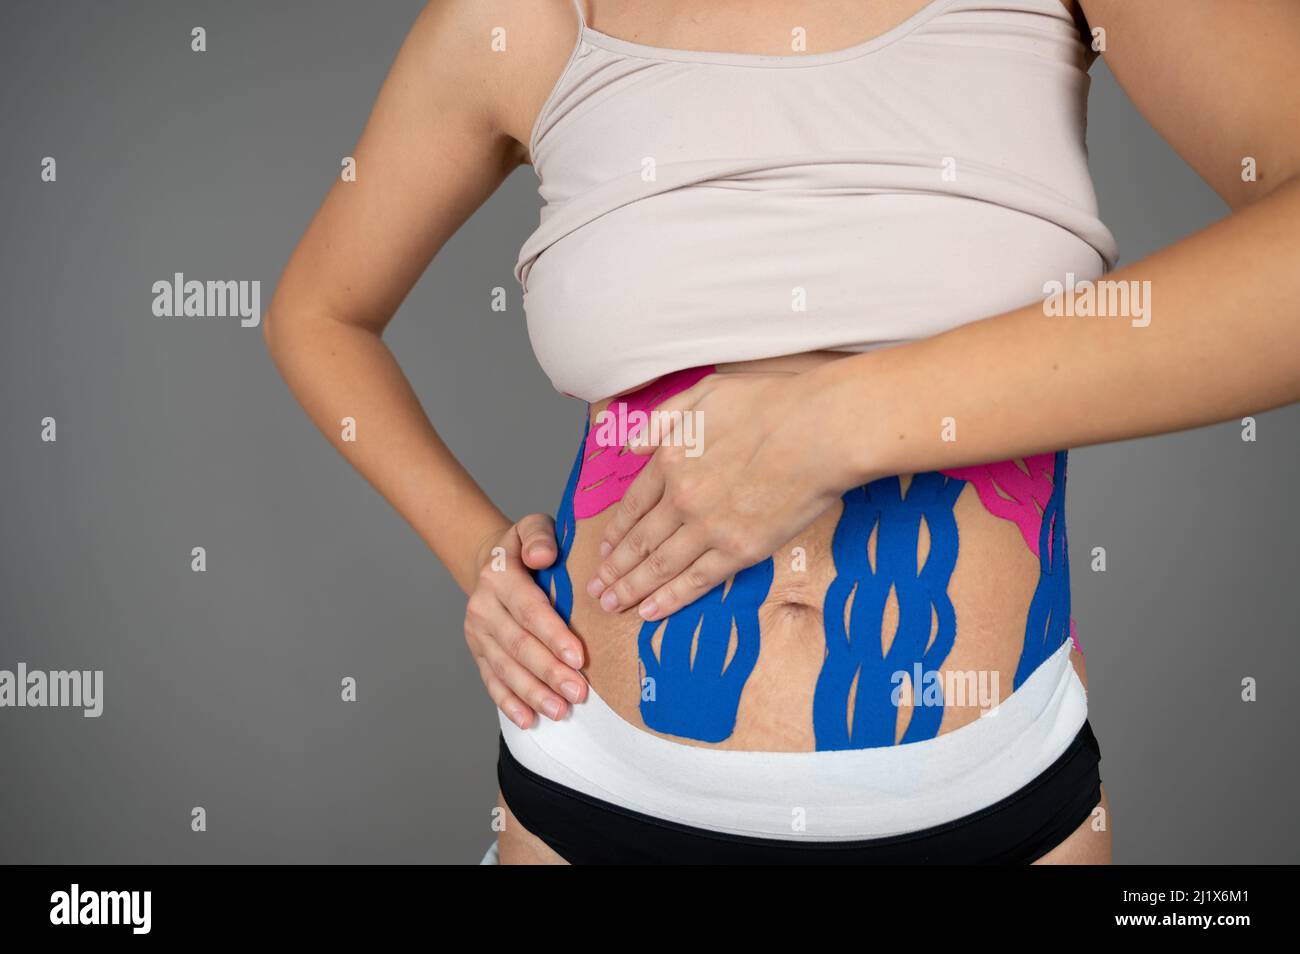 Une jeune femme montre des cassettes kinésio sur son corps. Kinesio taping, entorses, blessures et douleur musculaire concept Banque D'Images